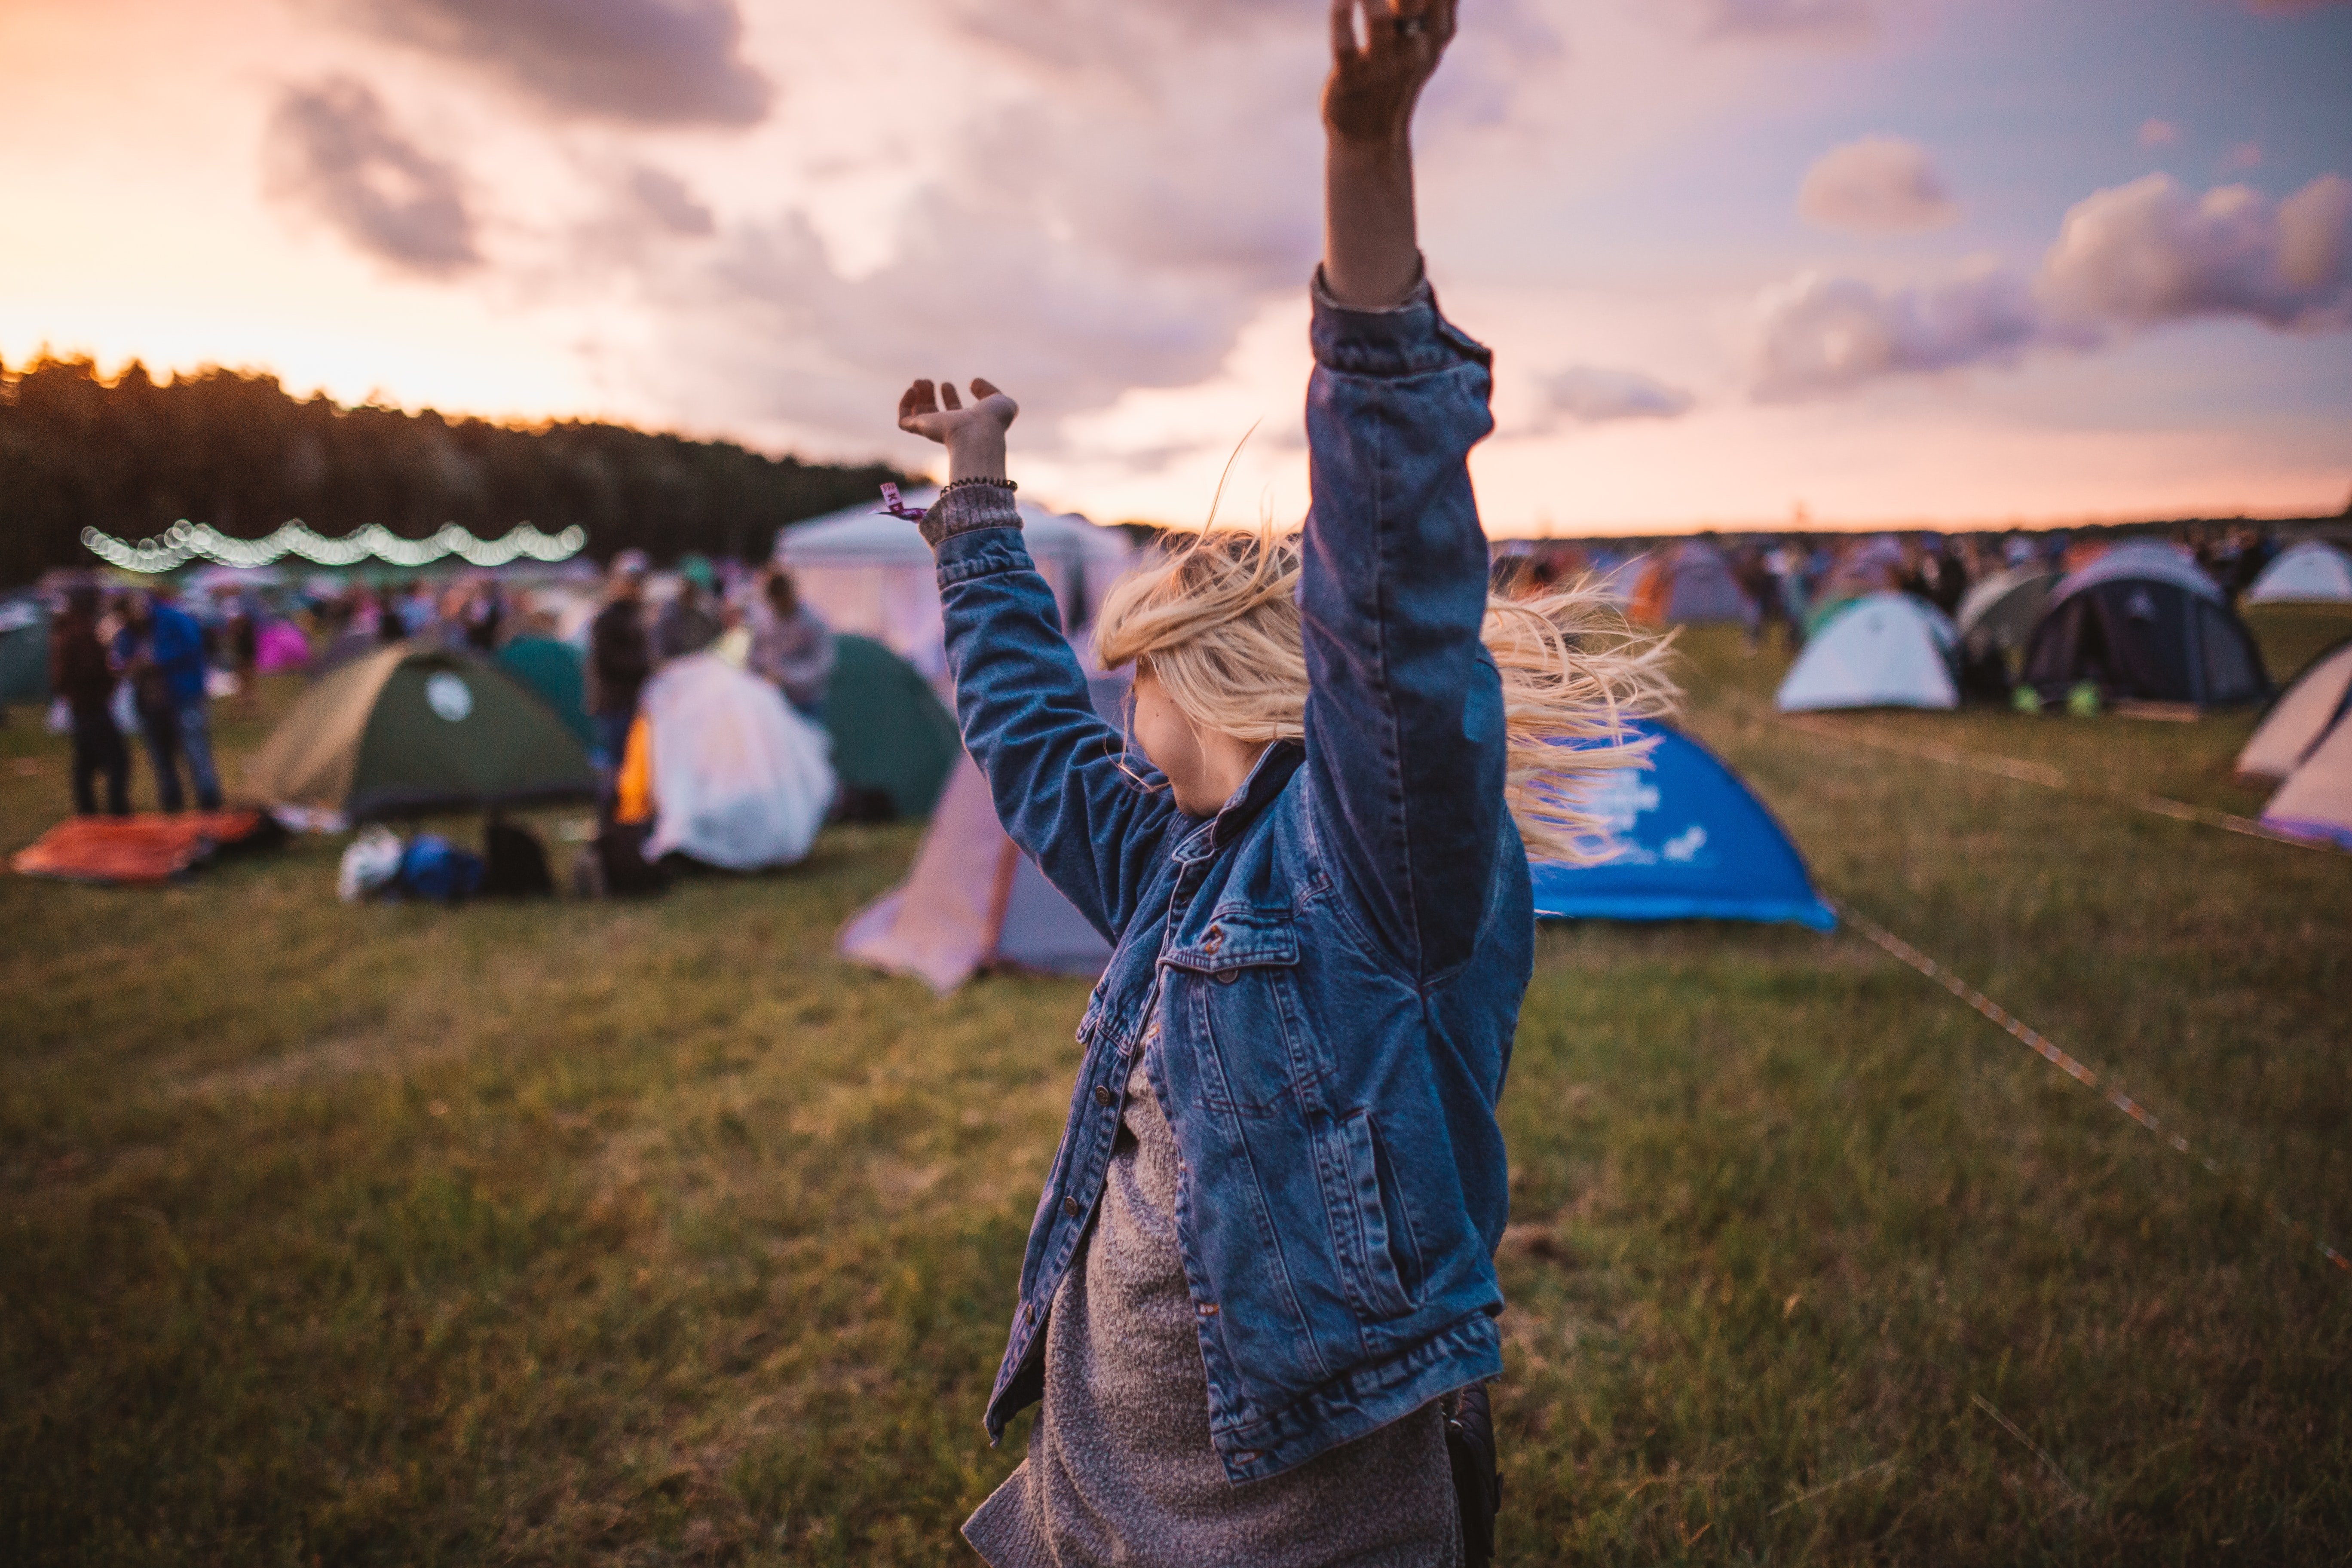 Una mujer baila sola en un campamento. | Foto: Unsplash